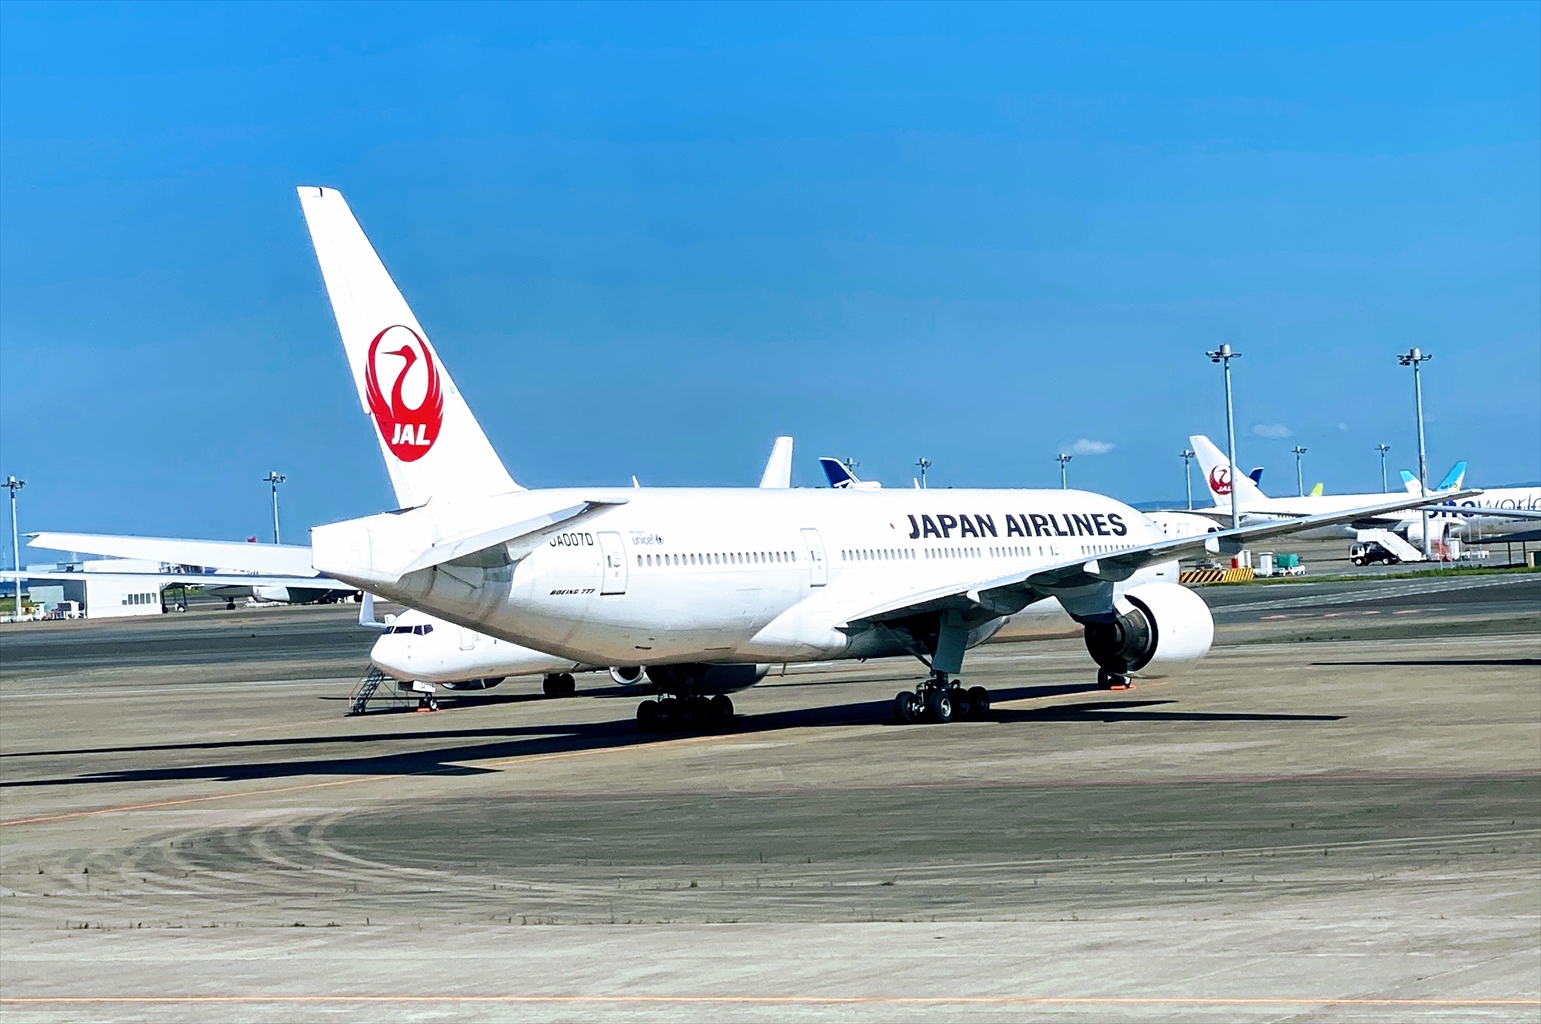 エアバスA350-900型機 JL919 沖縄(那覇)～羽田 ファーストクラス 搭乗記 01JUN21